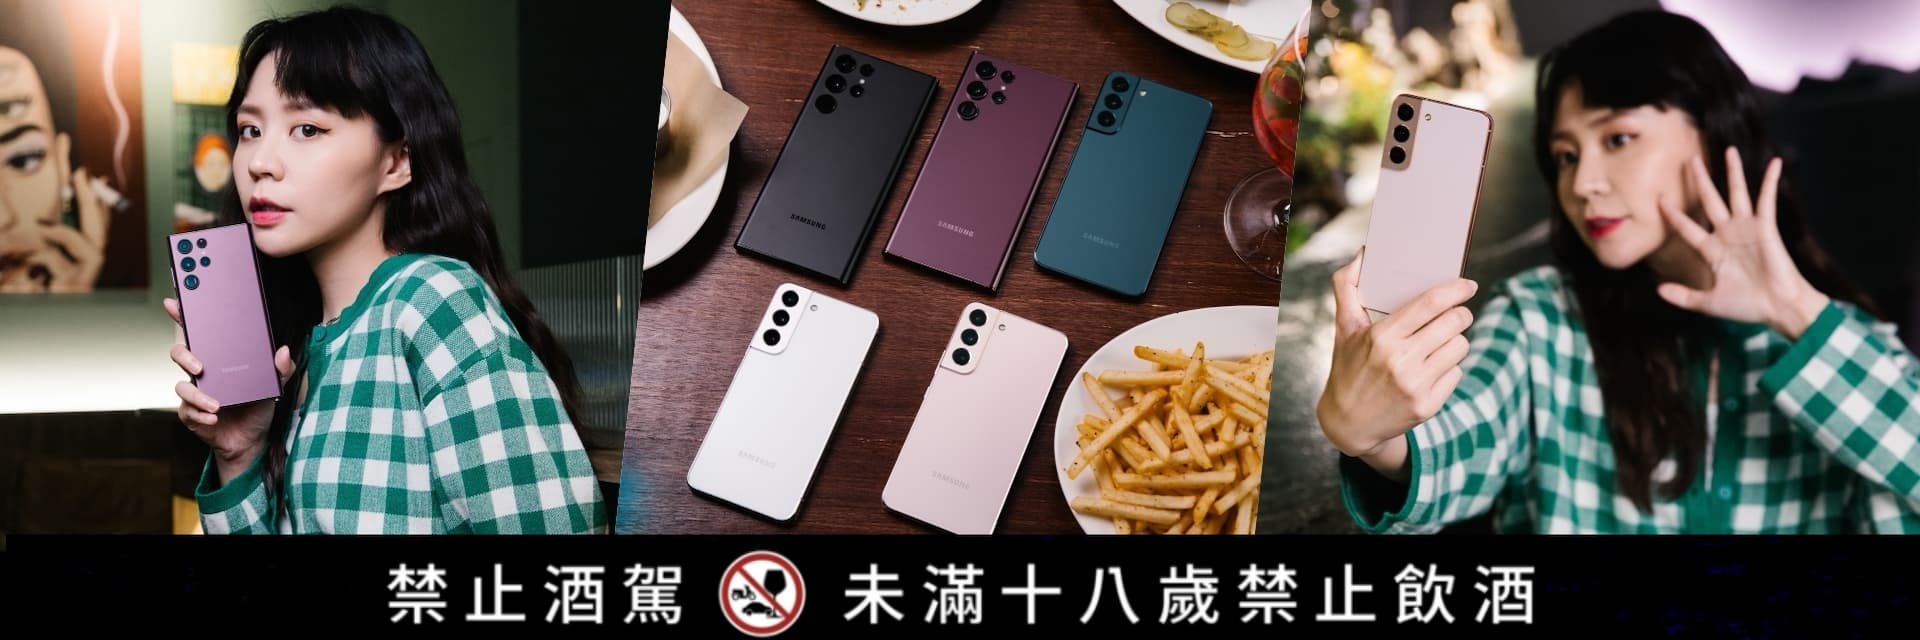 #潮流酒吧 TOP 3 #手機界的單眼 #Samsung Galaxy S22 沒去過還敢在台北街頭混？好喝、好吃、好拍一次GET！